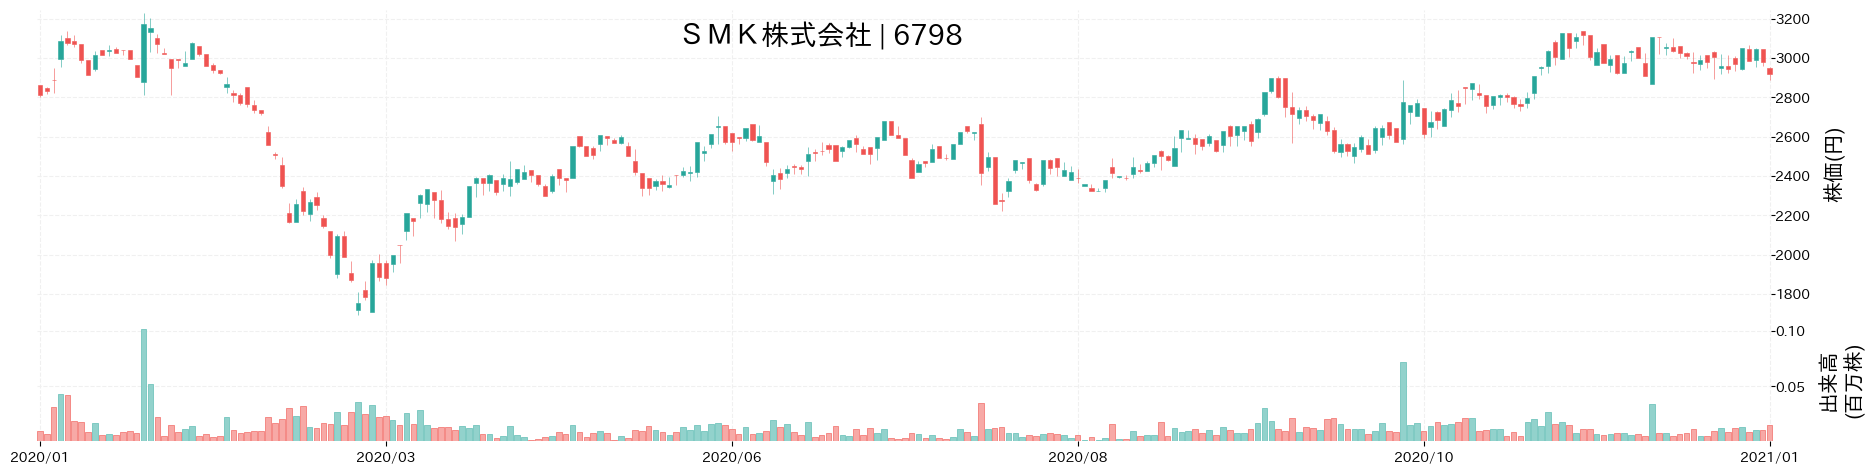 SMKの株価推移(2020)